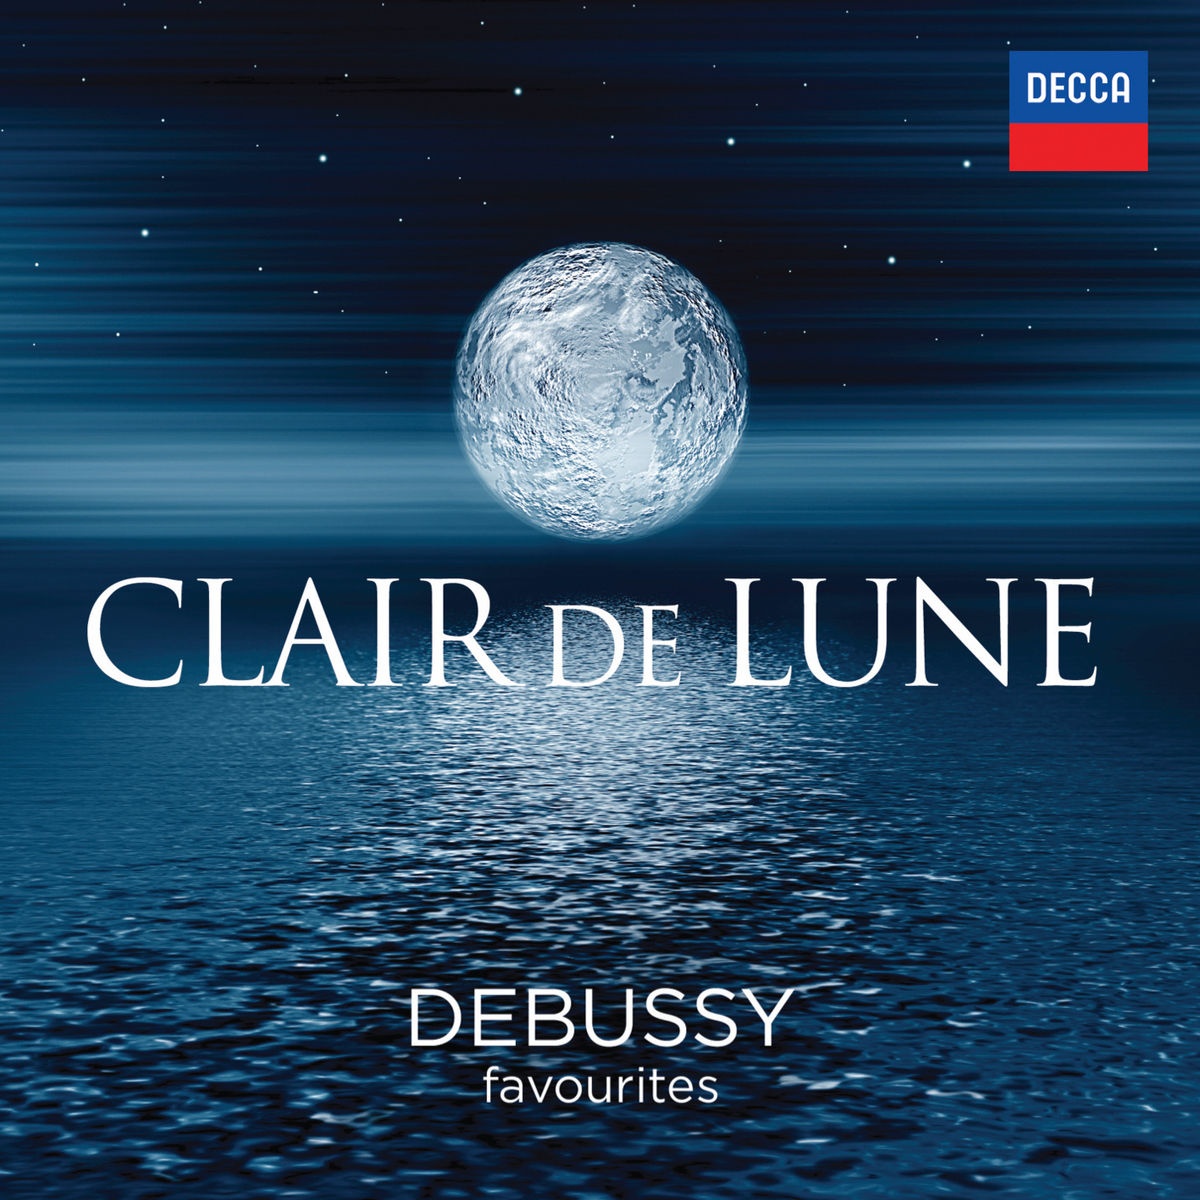 Debussy: Préludes - Book 1 - 8. La fille aux cheveux de lin